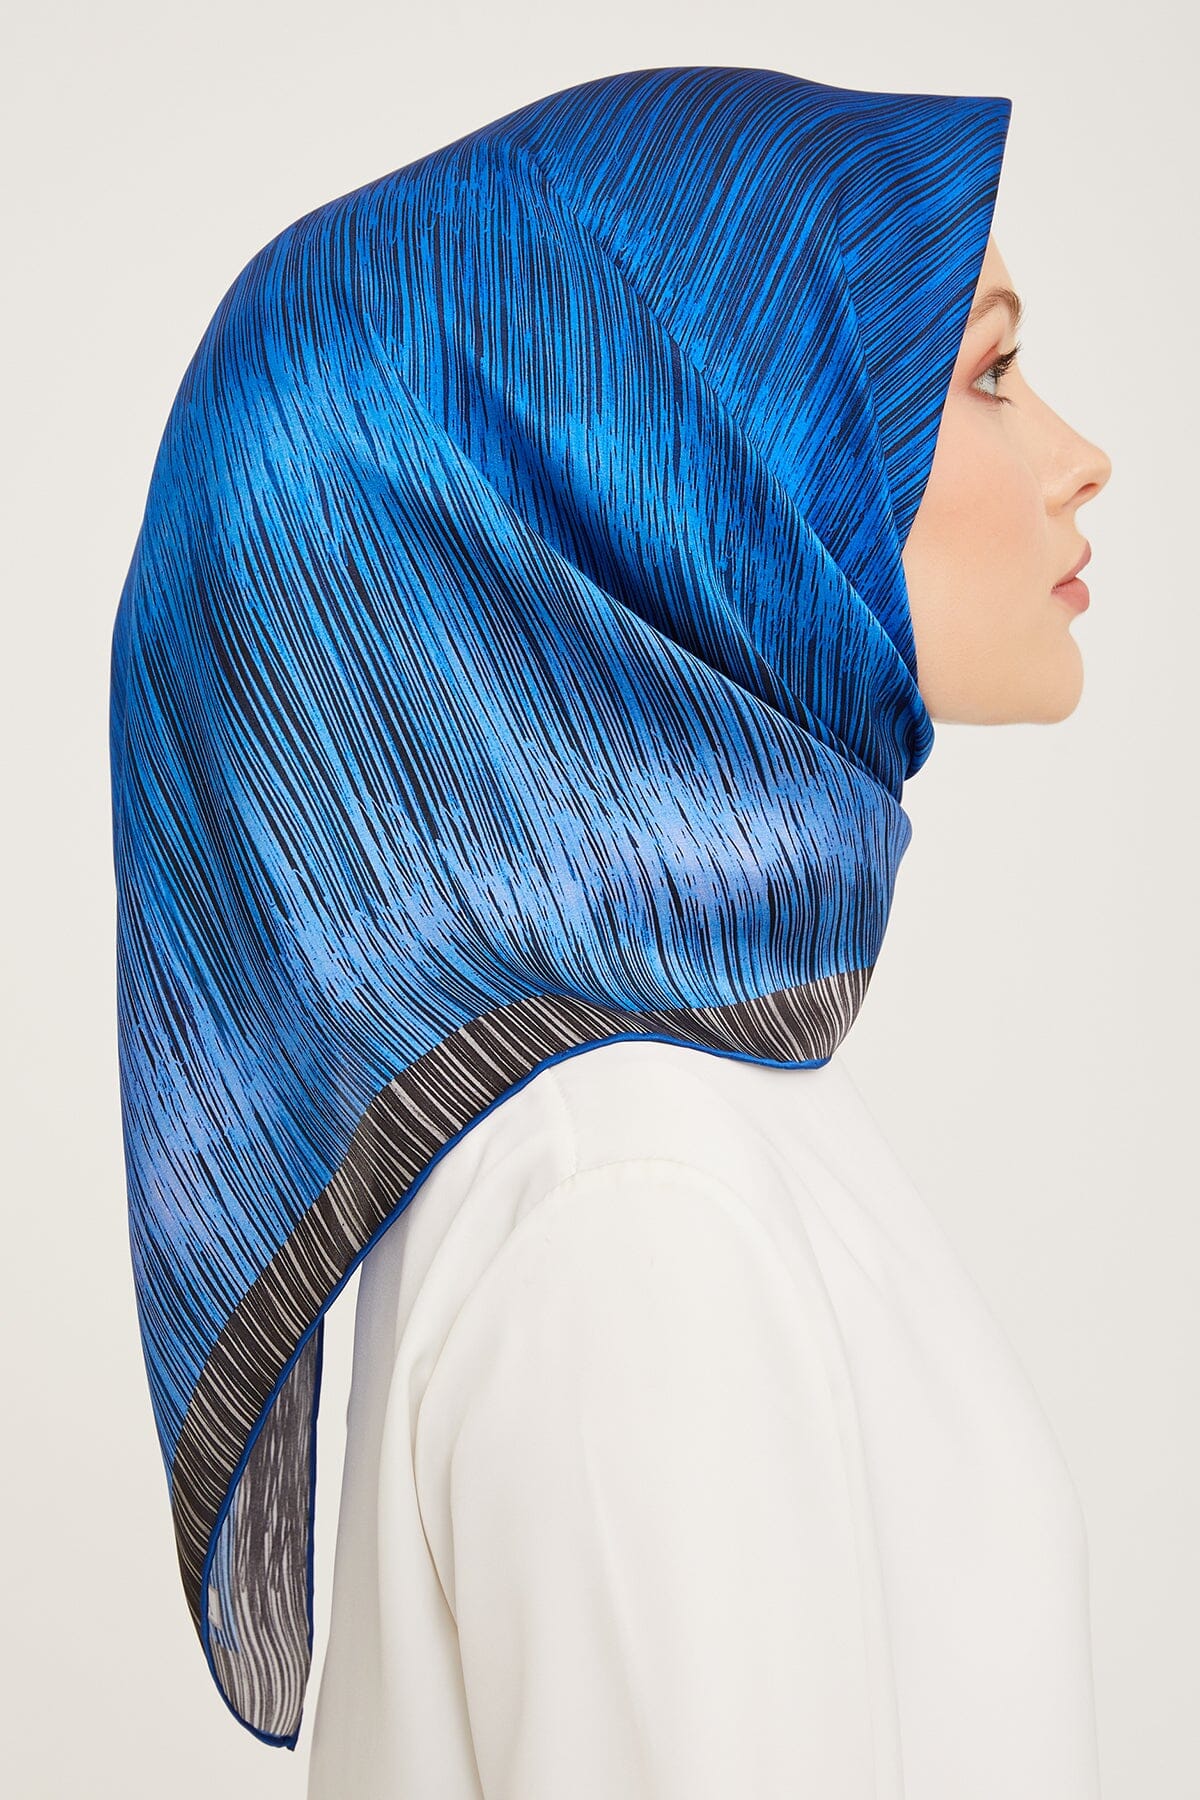 Armine Myers Silk Hair Wrap 